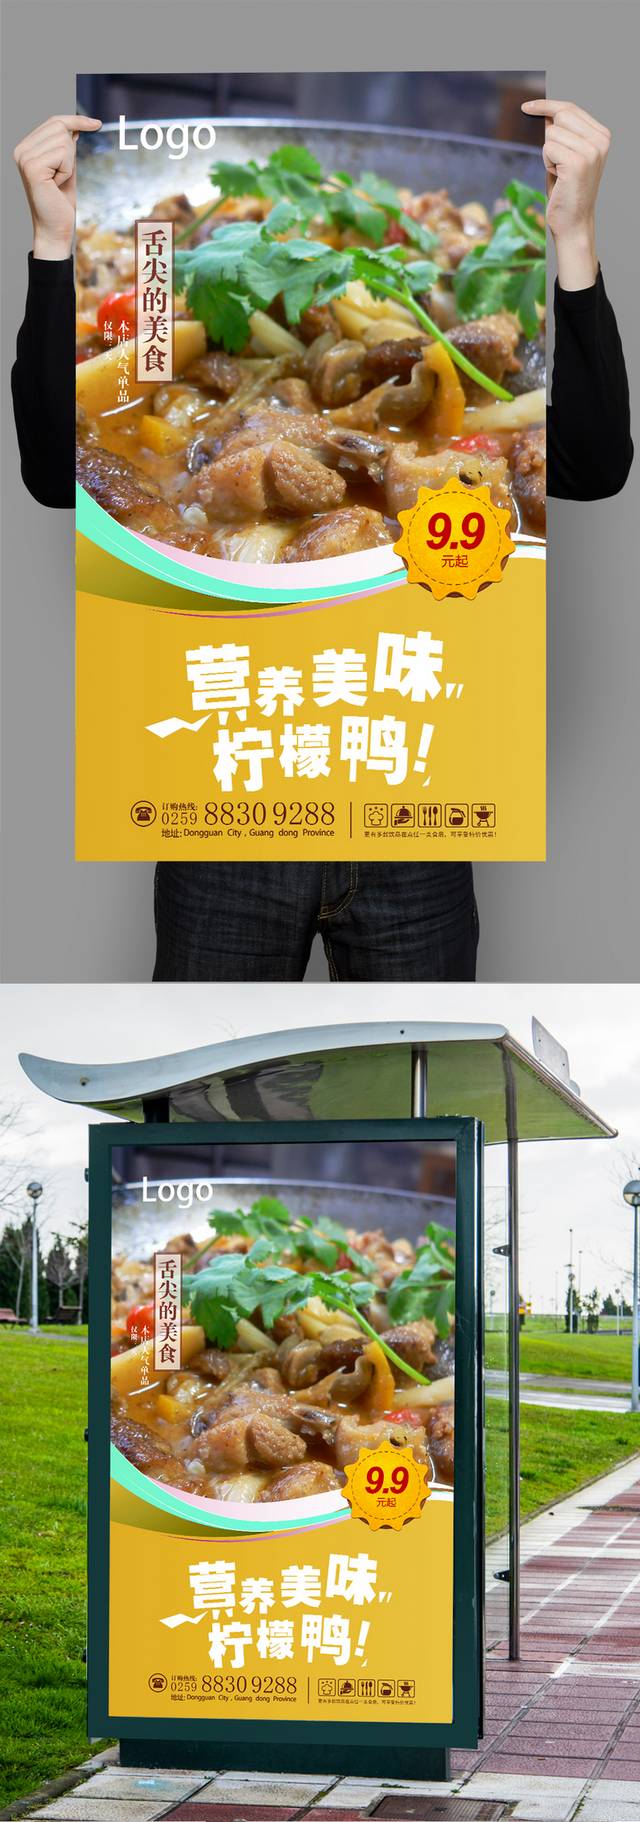 高清柠檬鸭宣传海报设计模板